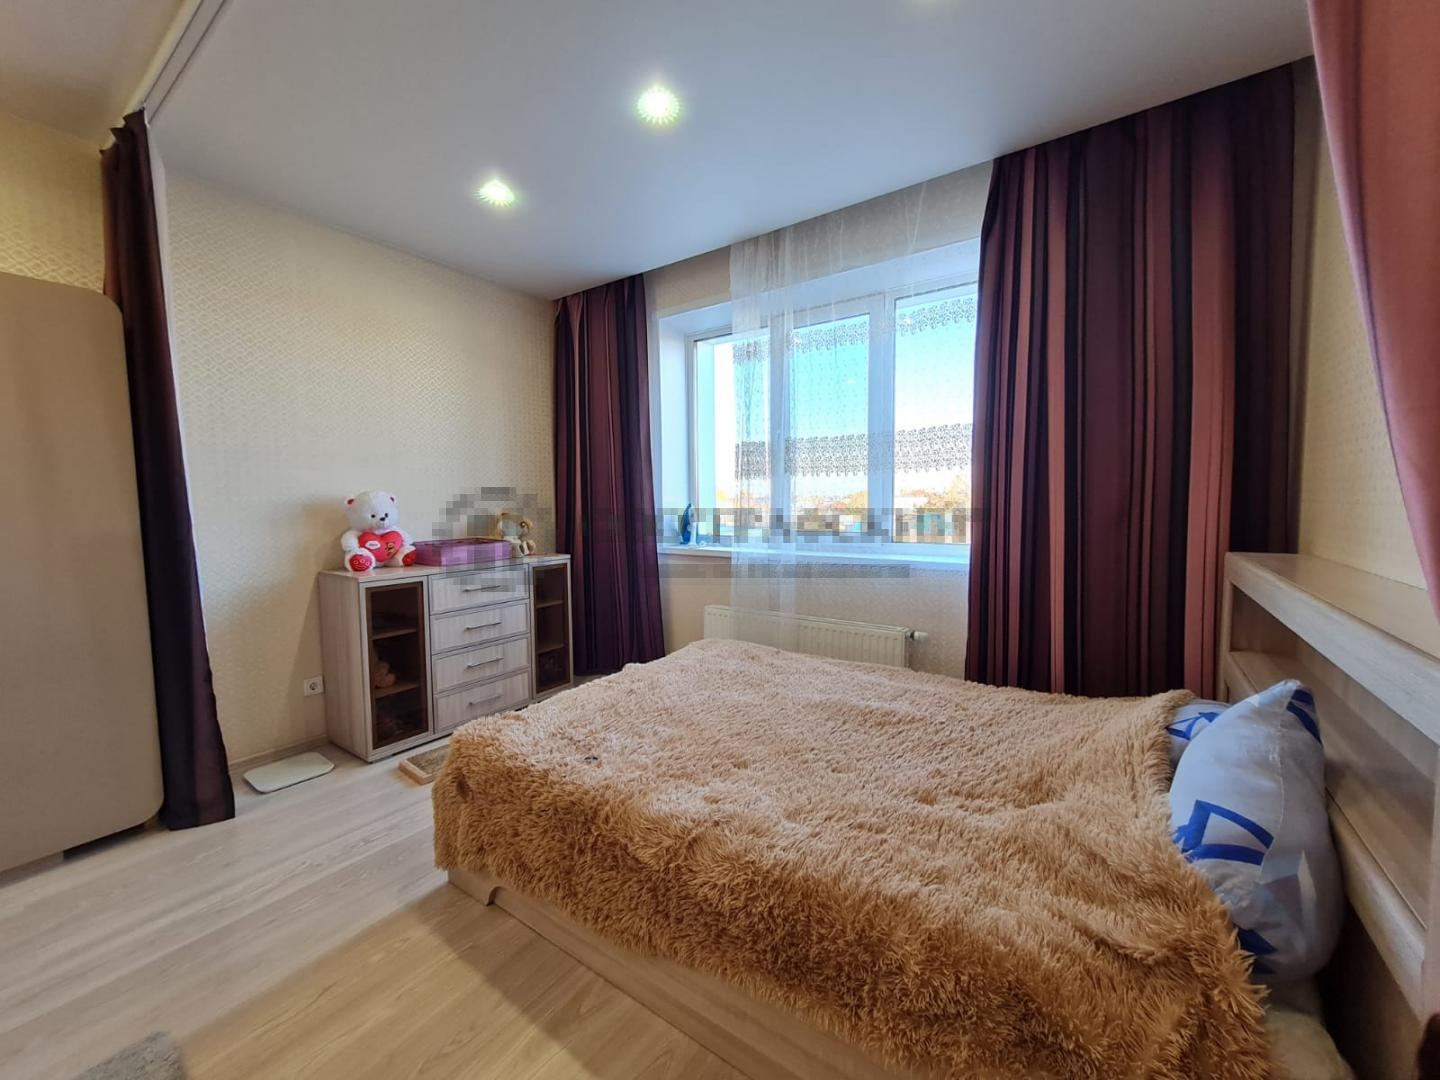 Продается уютная 1 комнатная квартира в Жилом комплексе комфорт-класса «Взлетная полоса». Квартира находится на 2м... - 16